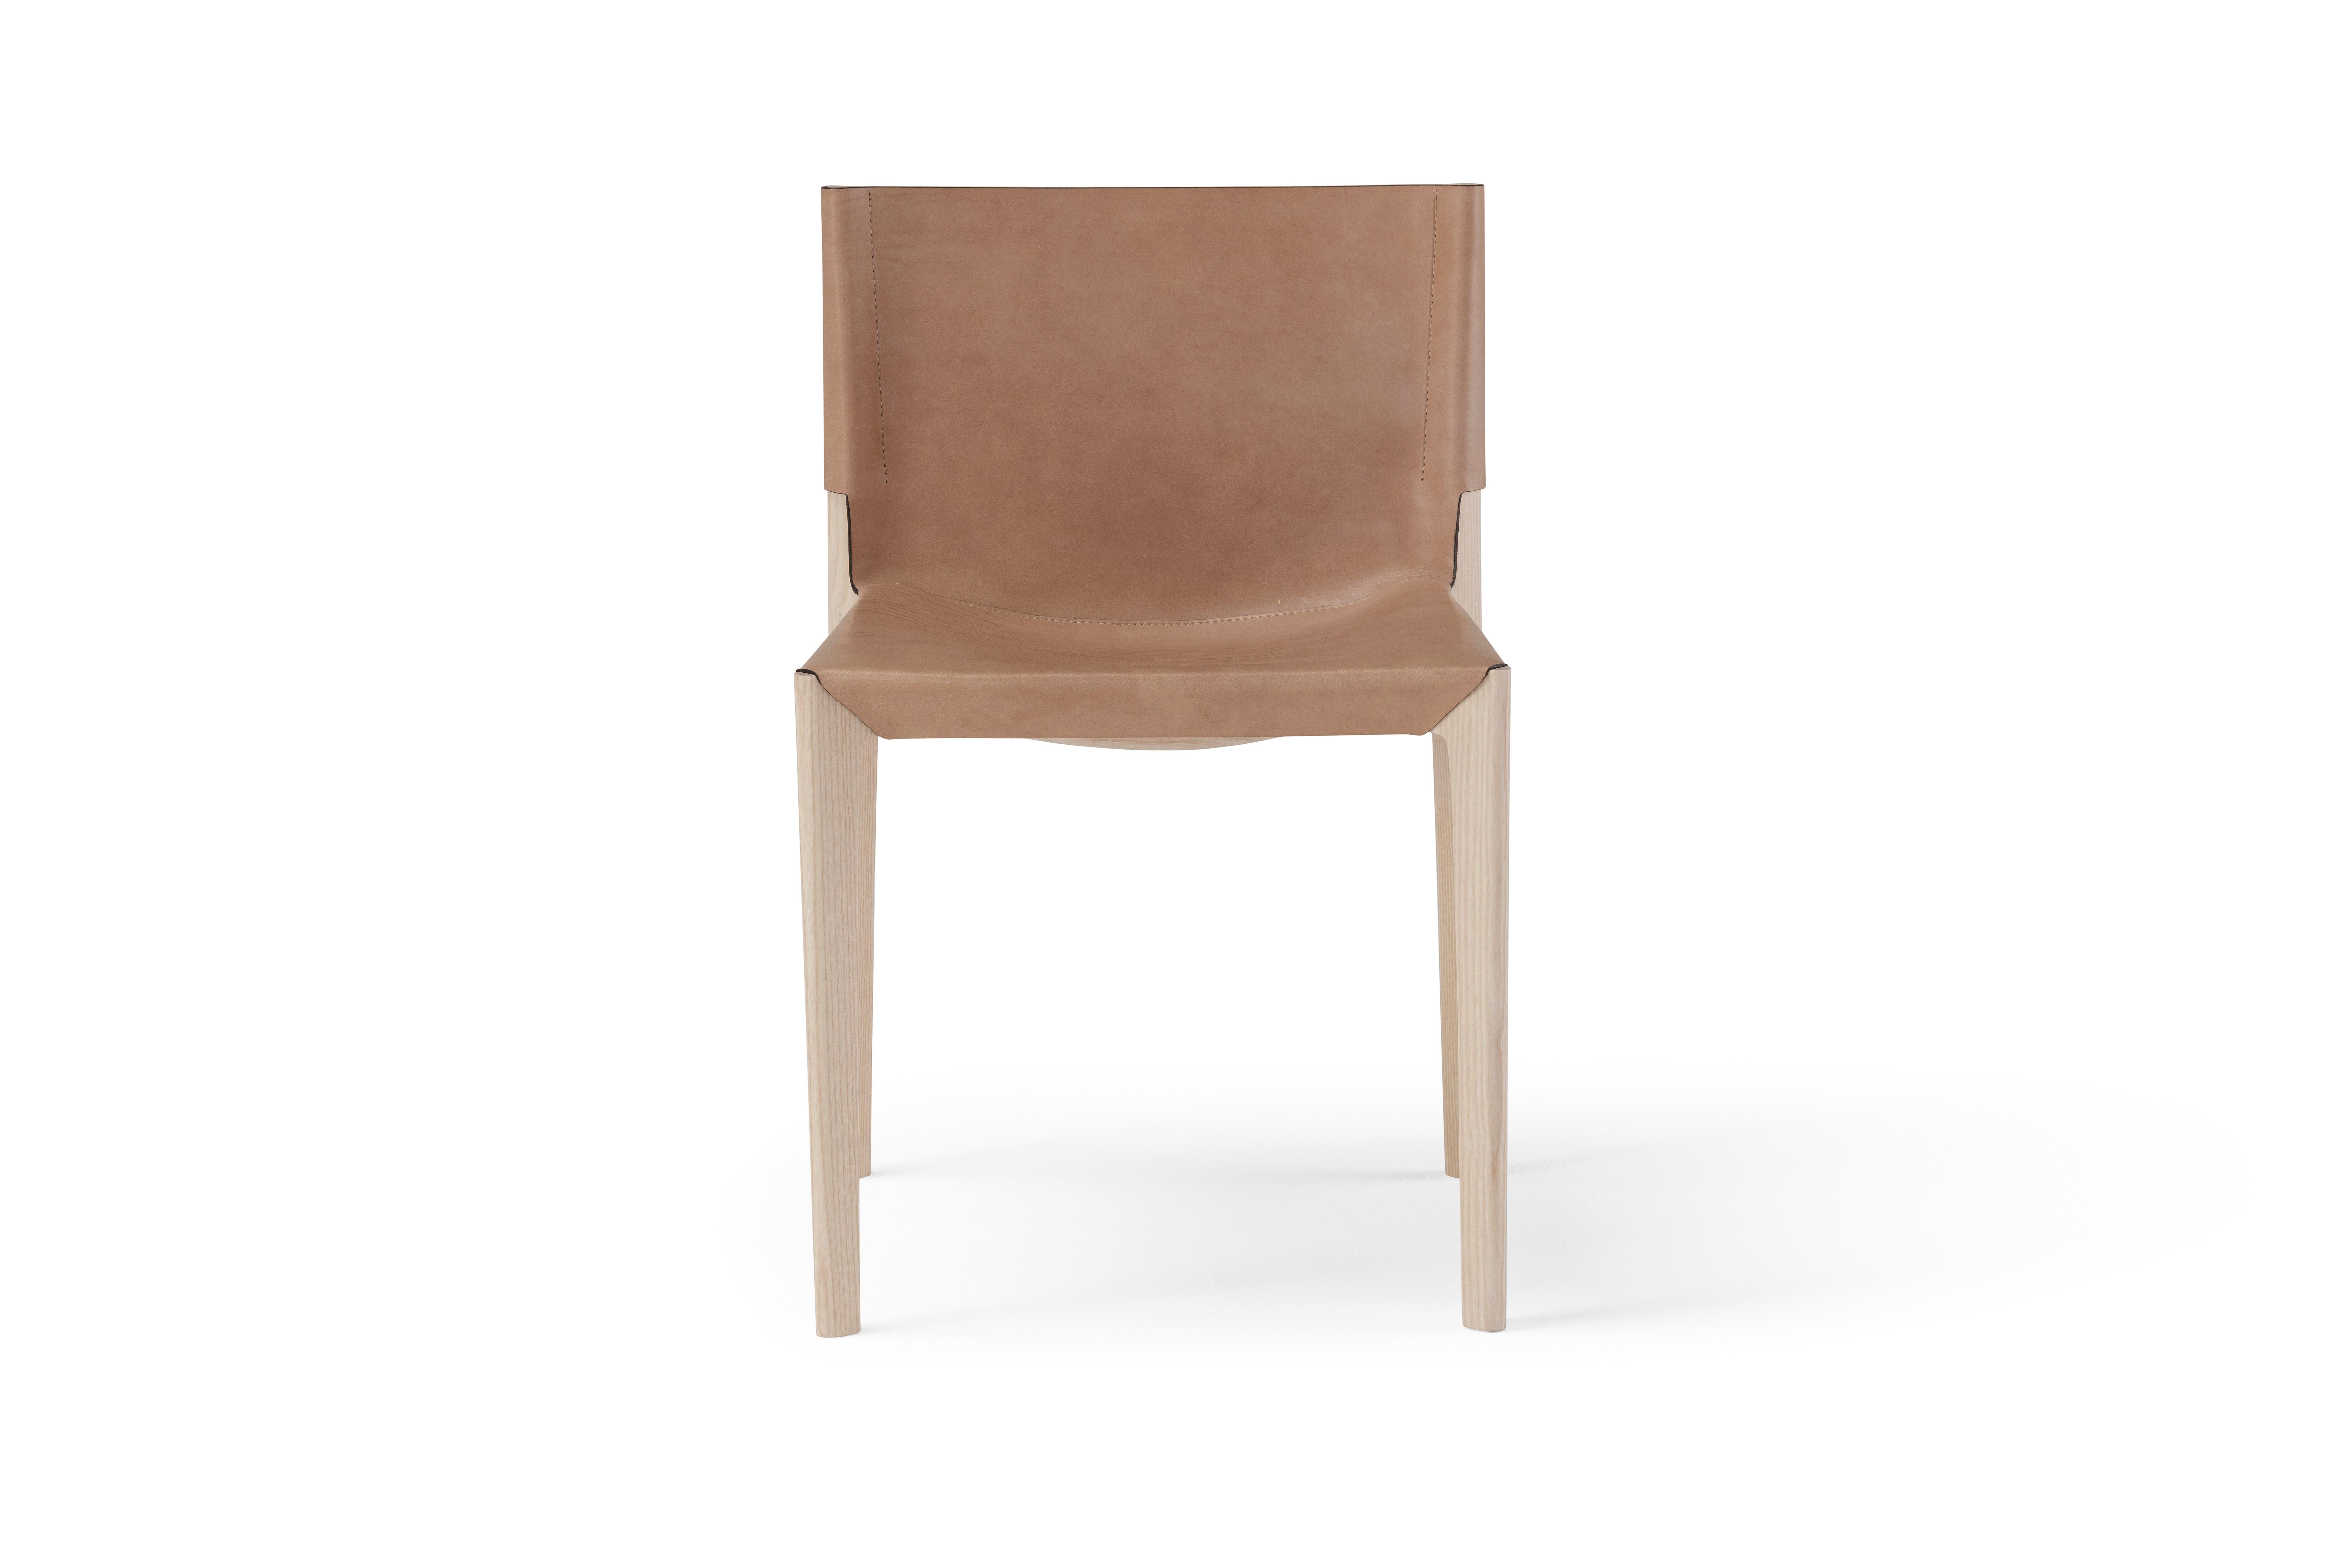 Holzstuhl 'Stelze', Cuoio & Holz
Designer Stefano Grassi

Höhe: 75 cm 
Breite: 49 cm
Tiefe: 49 cm 

STILT ist der Stuhl aus essentiellem Design und ausgewogenen Formen, die an Gelassenheit und heimische Wärme erinnern. Seine Struktur aus Massivholz